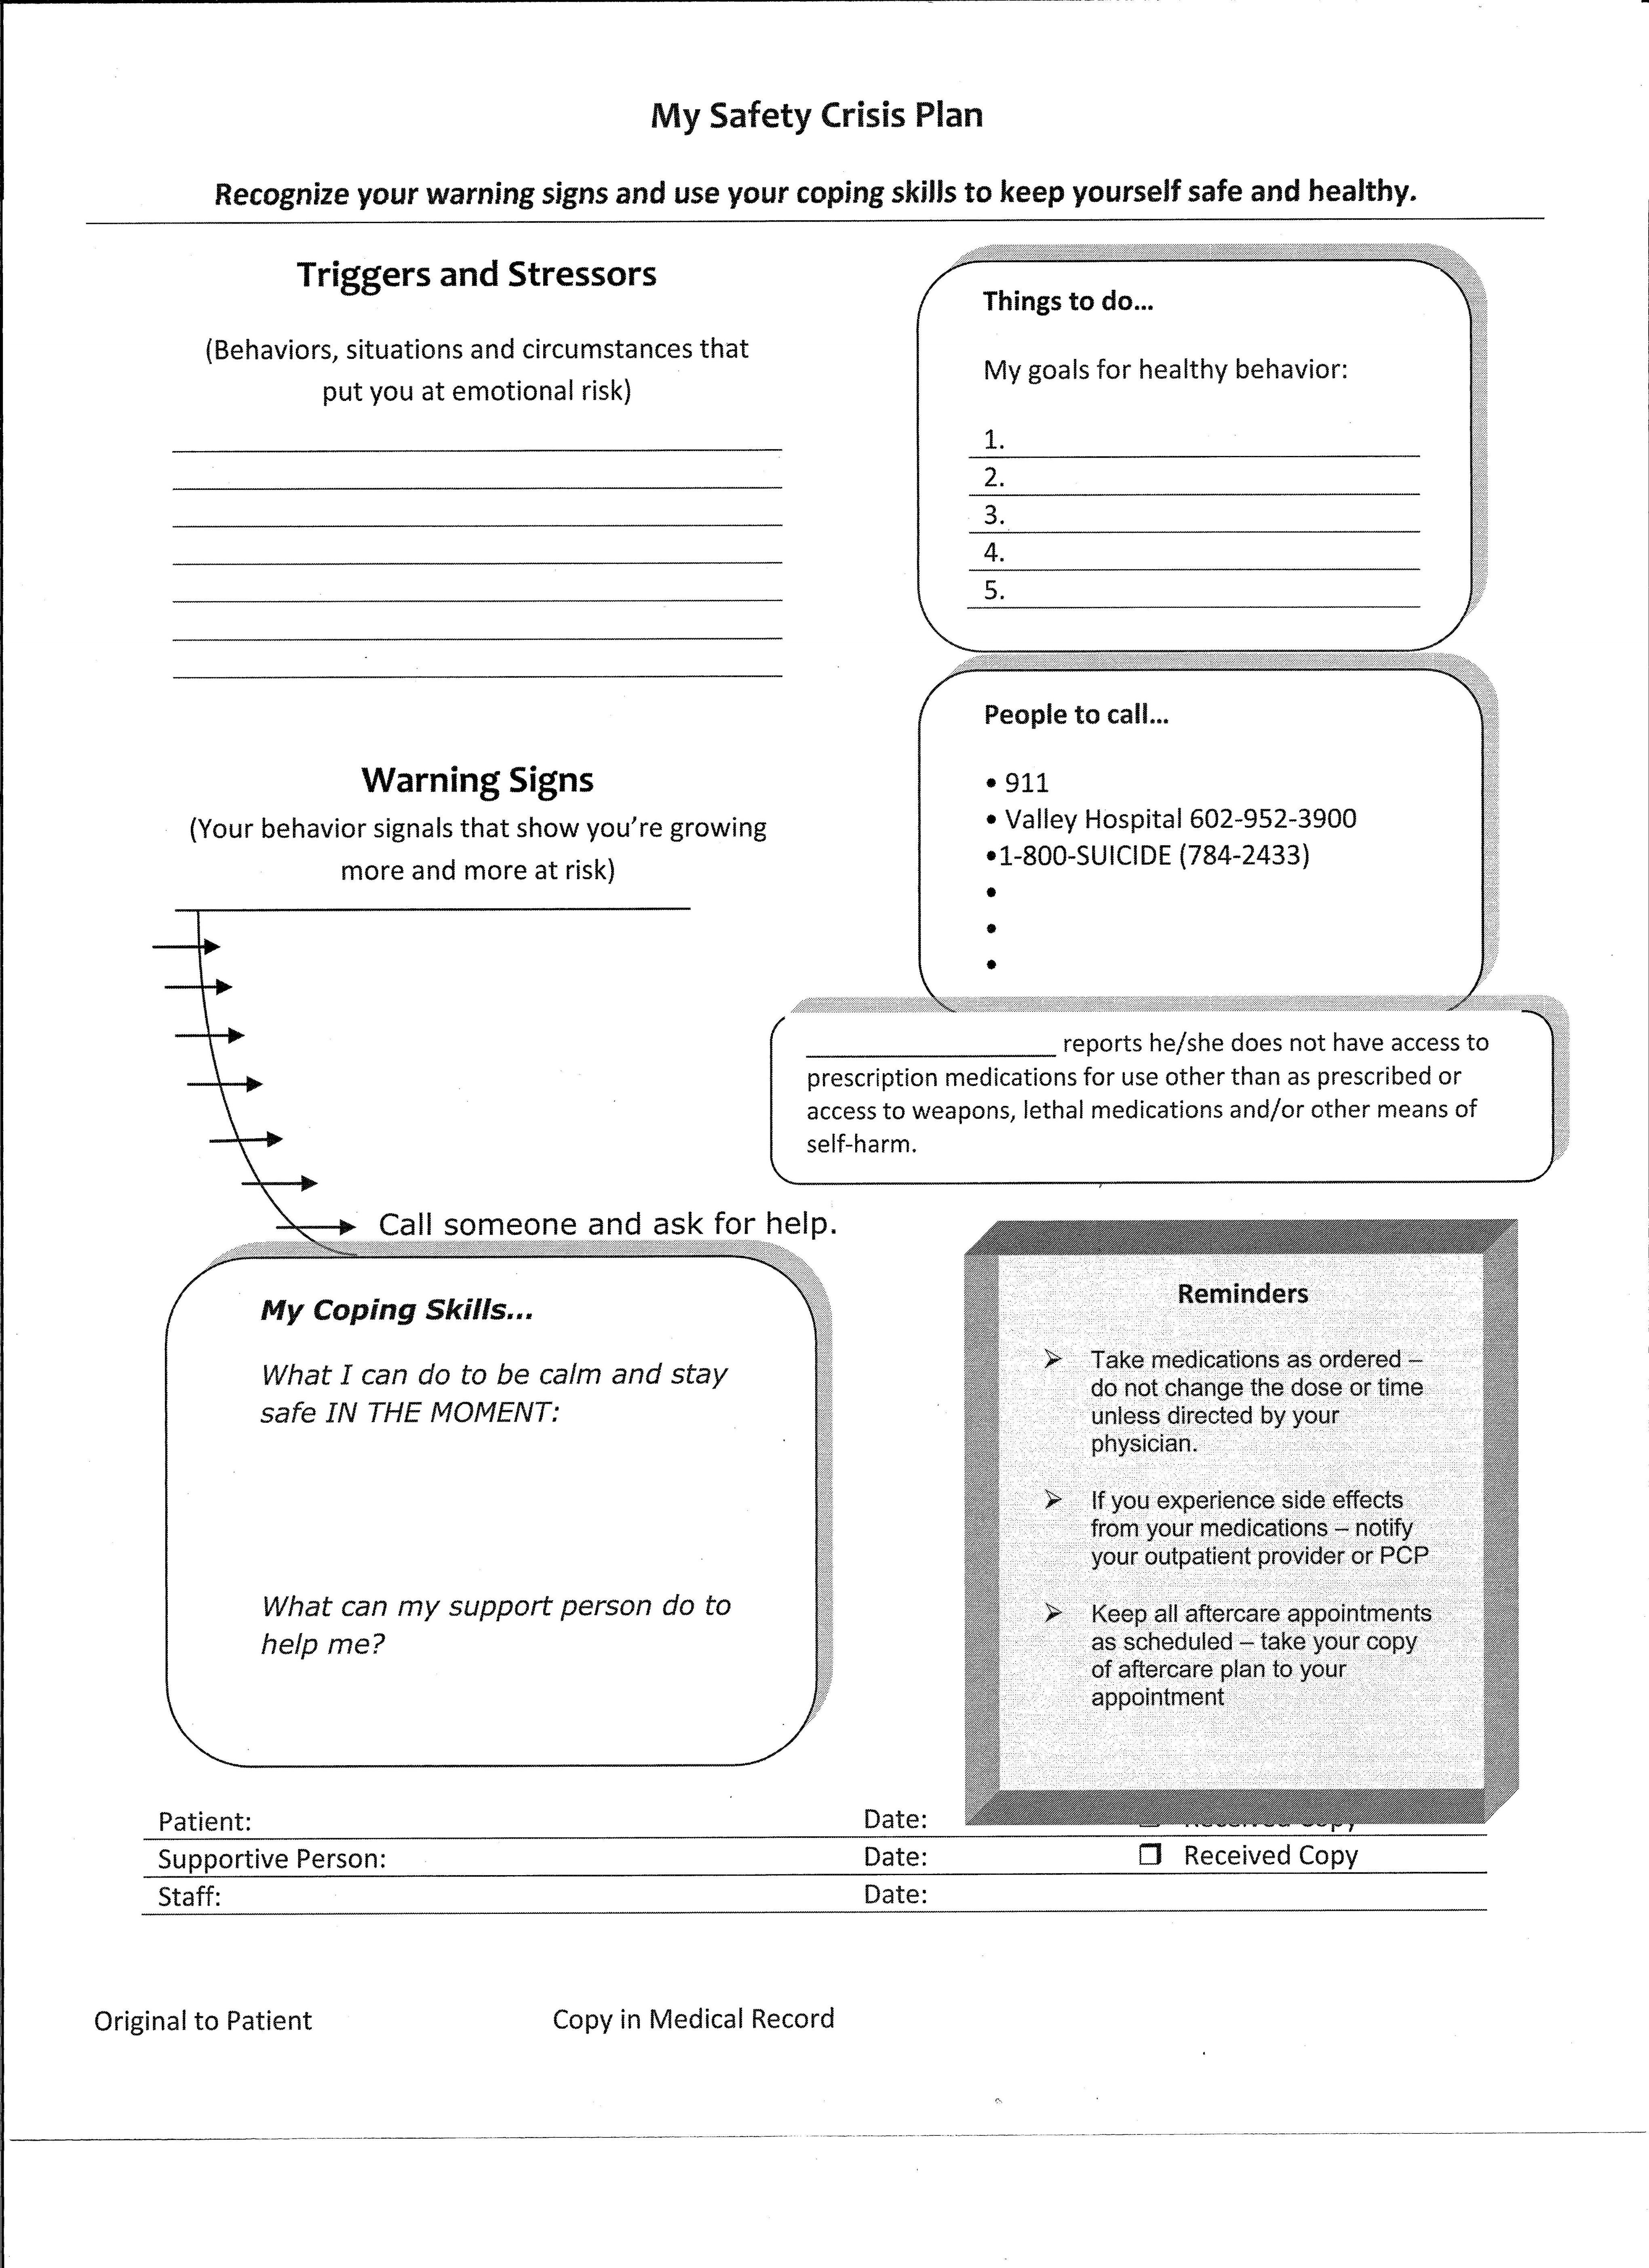 Wedding Planning Workbook Well Known Safety Plan Worksheet Rk59 Inside Safety Plan Worksheet